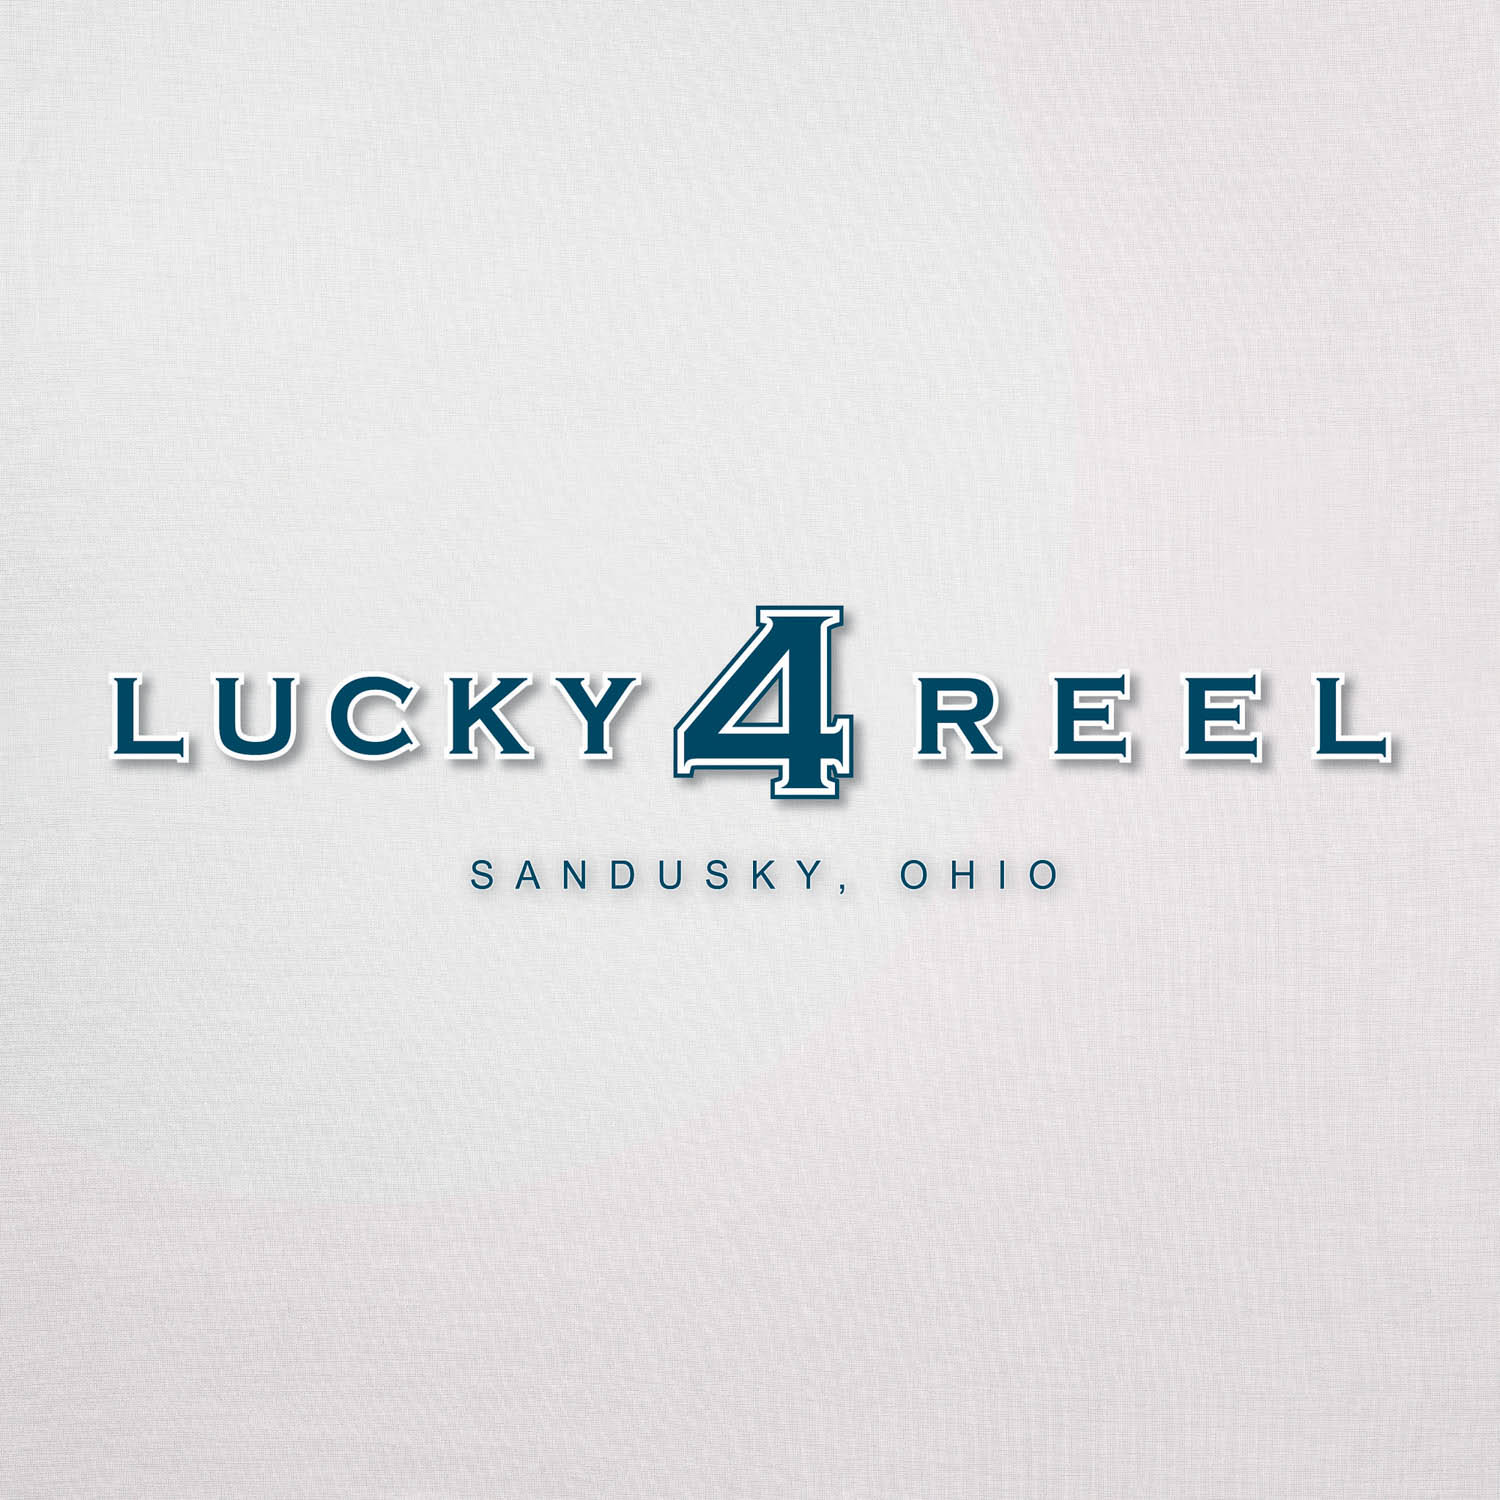 19 - lucky 4 reel logo 1.jpg